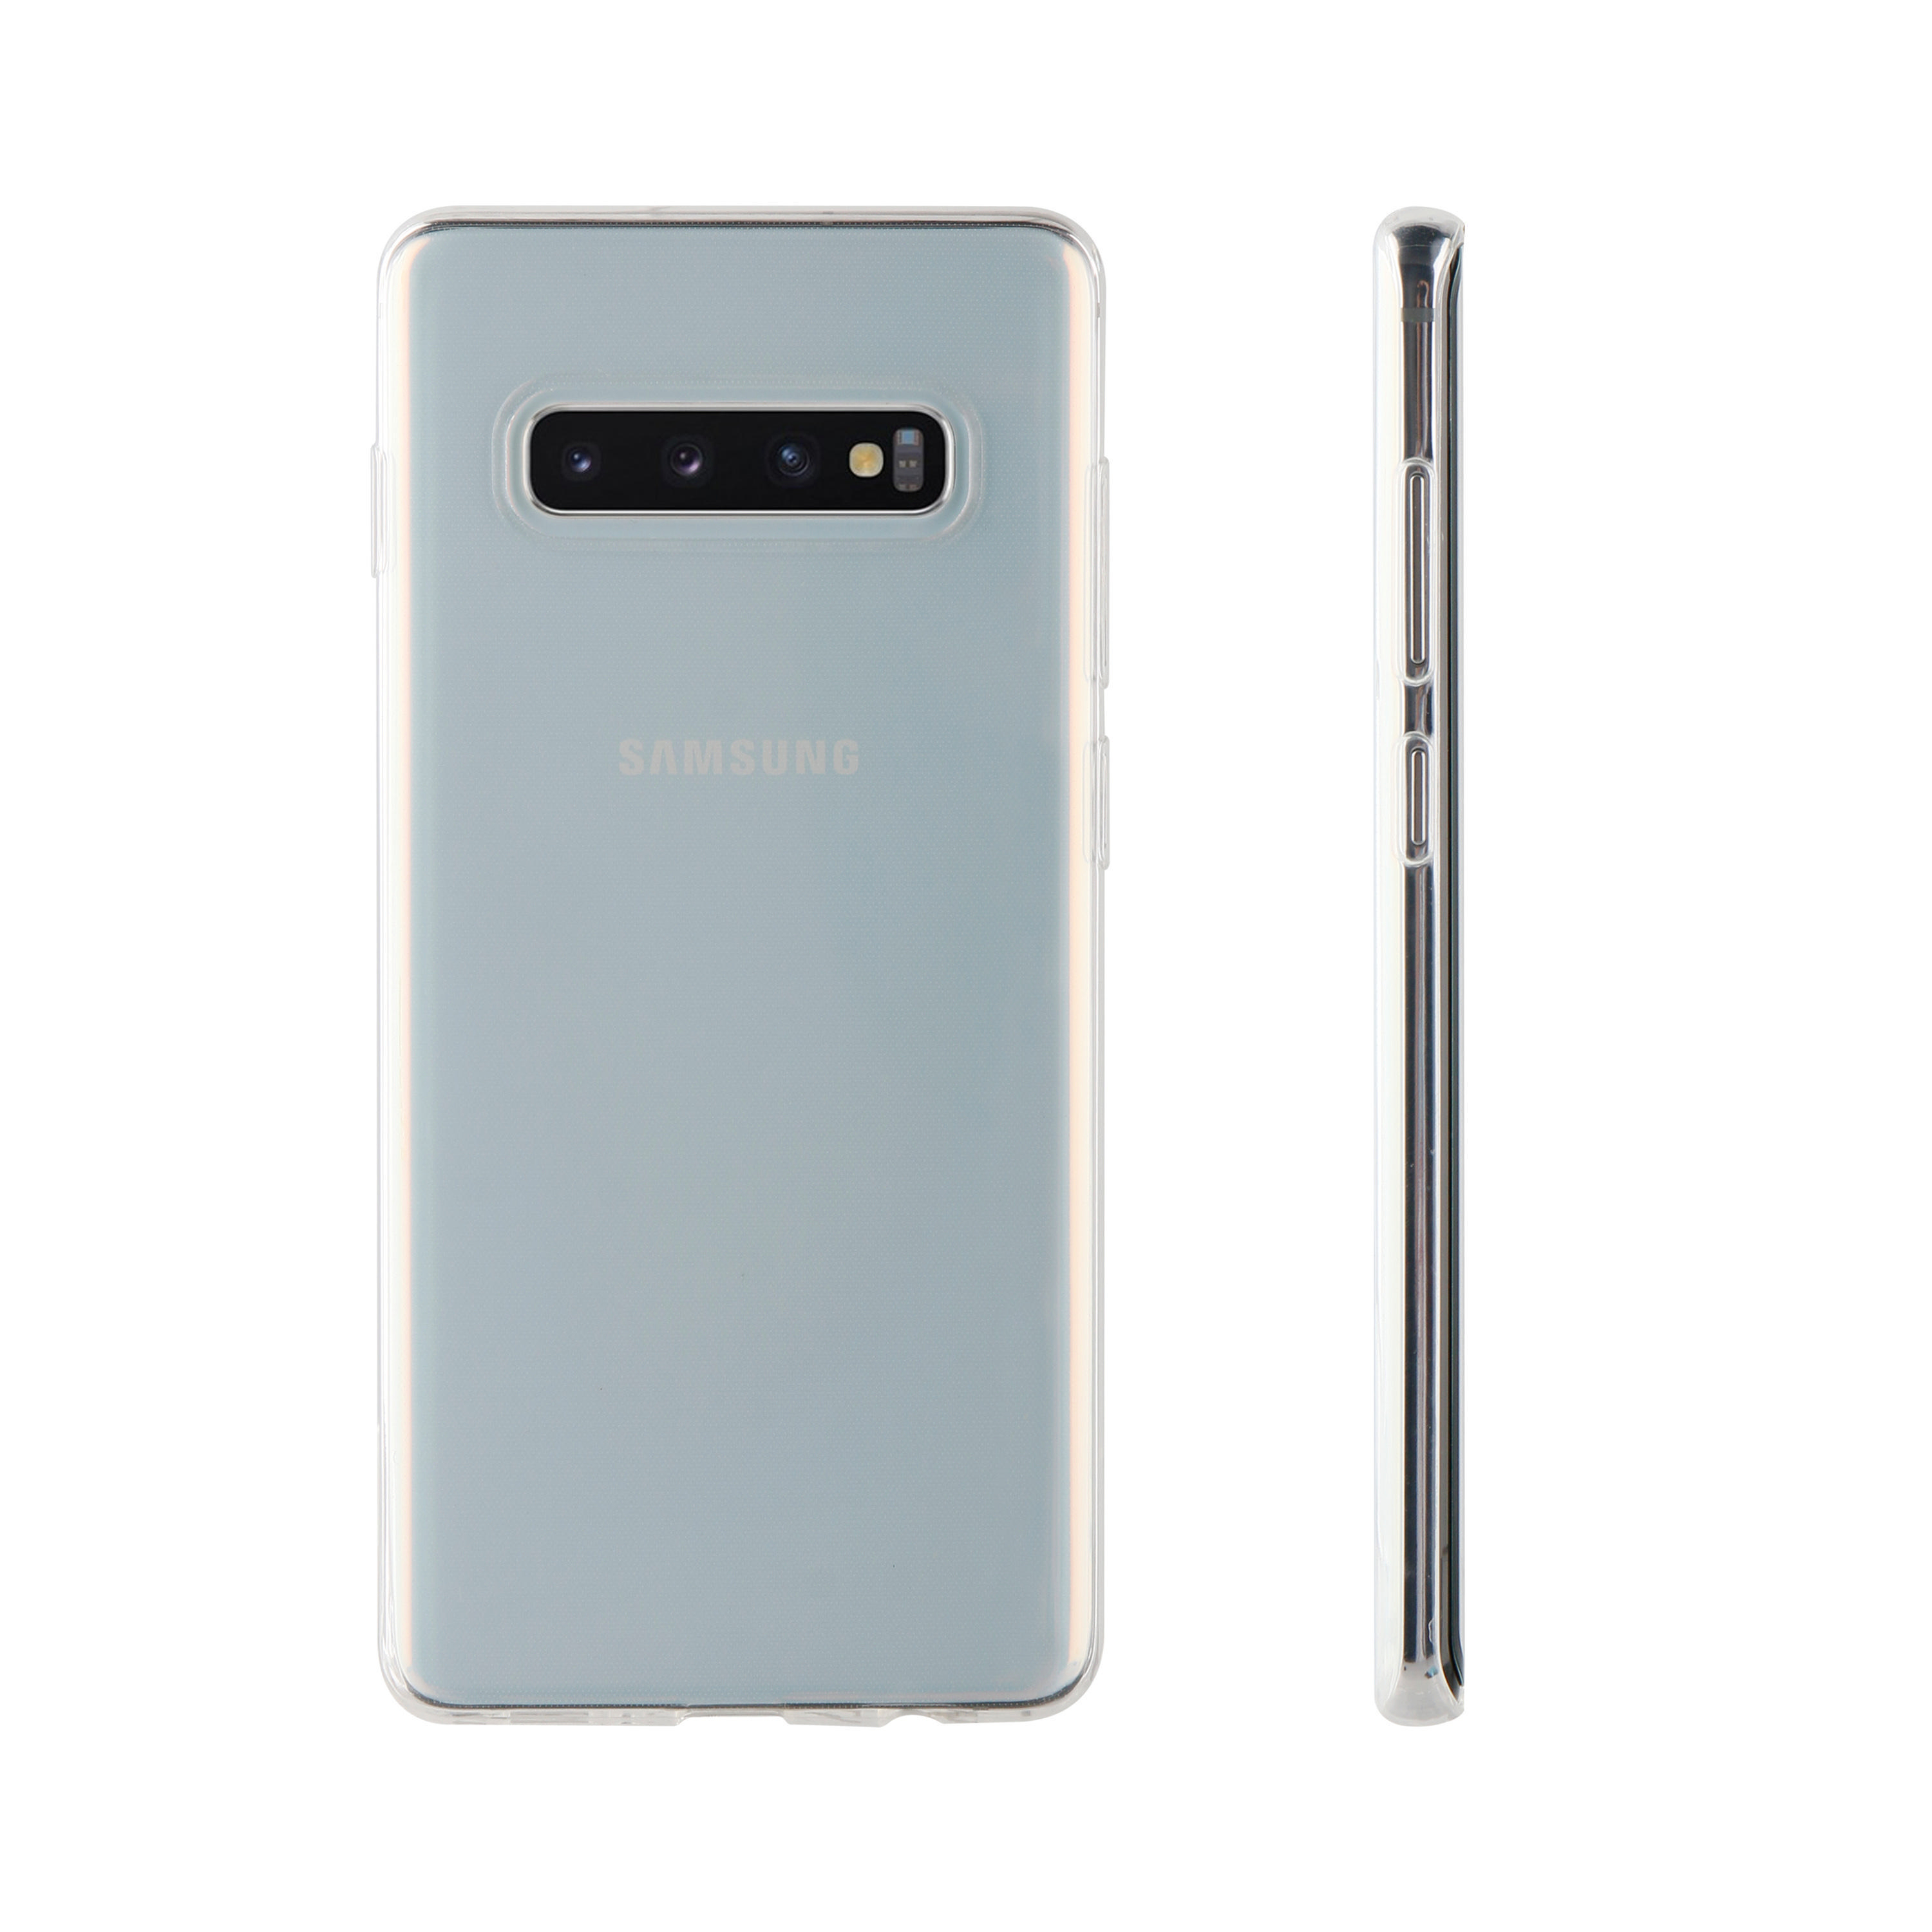 Slim, Galaxy Super Transparent Backcover, Samsung, 10+, S VIVANCO